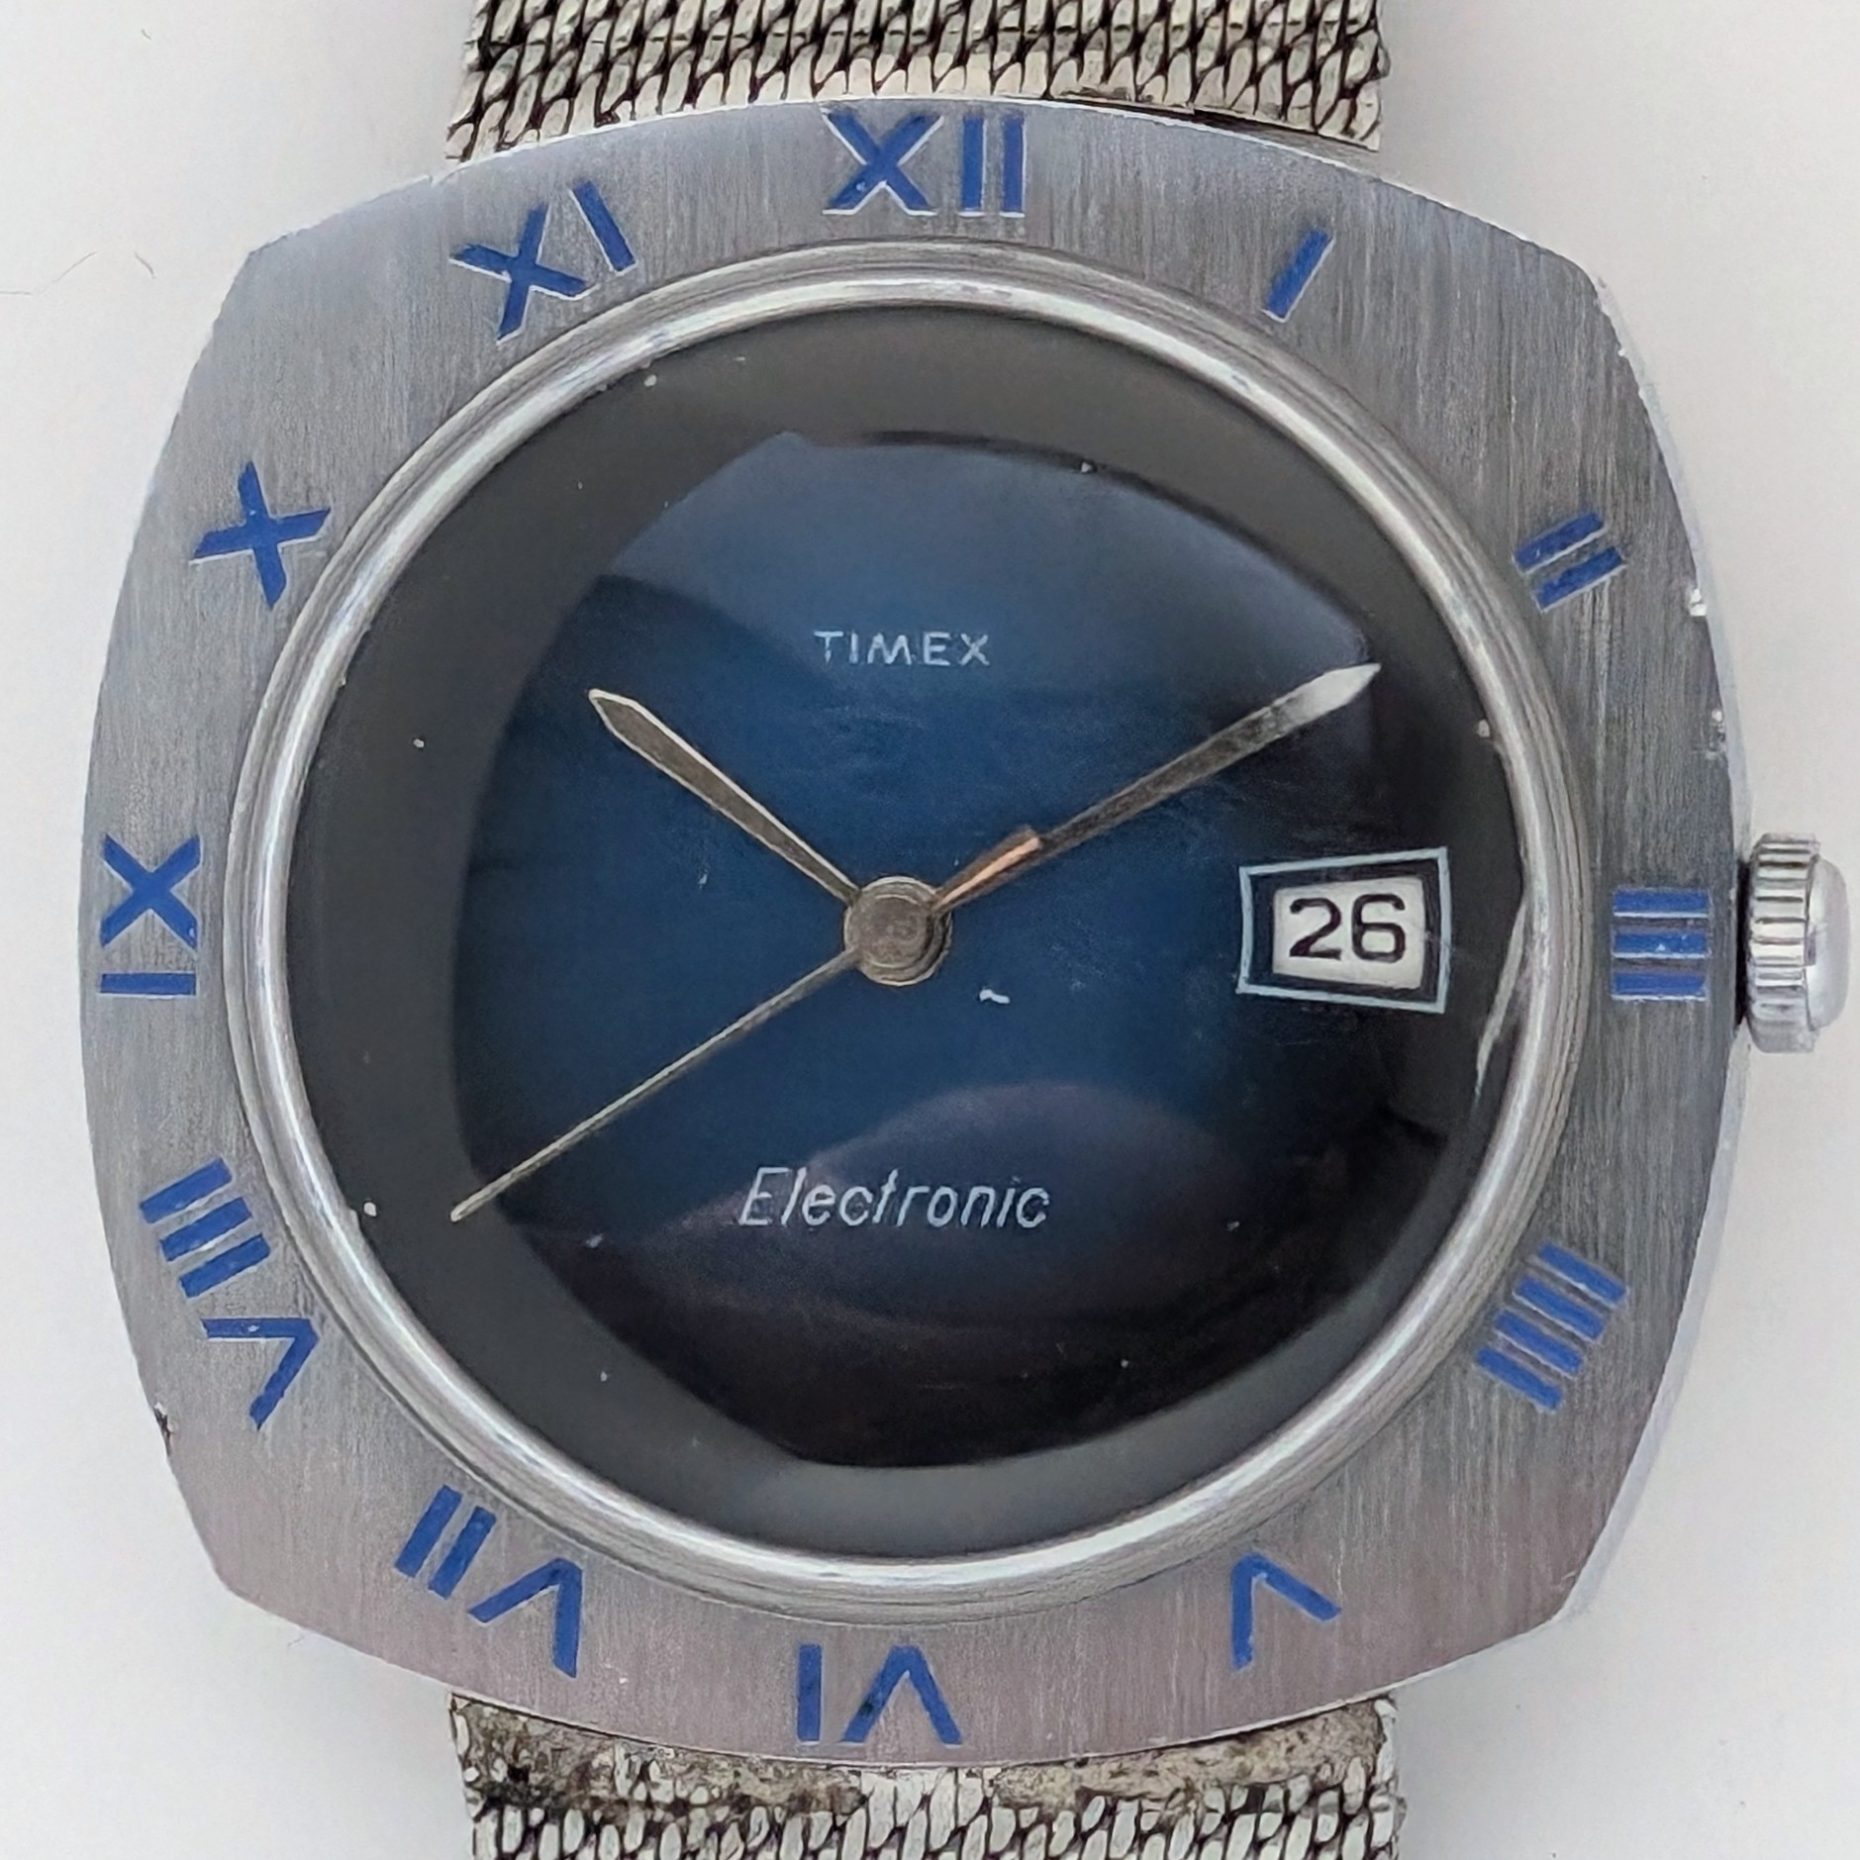 Timex Electronic 77750 xx73 1973 watch